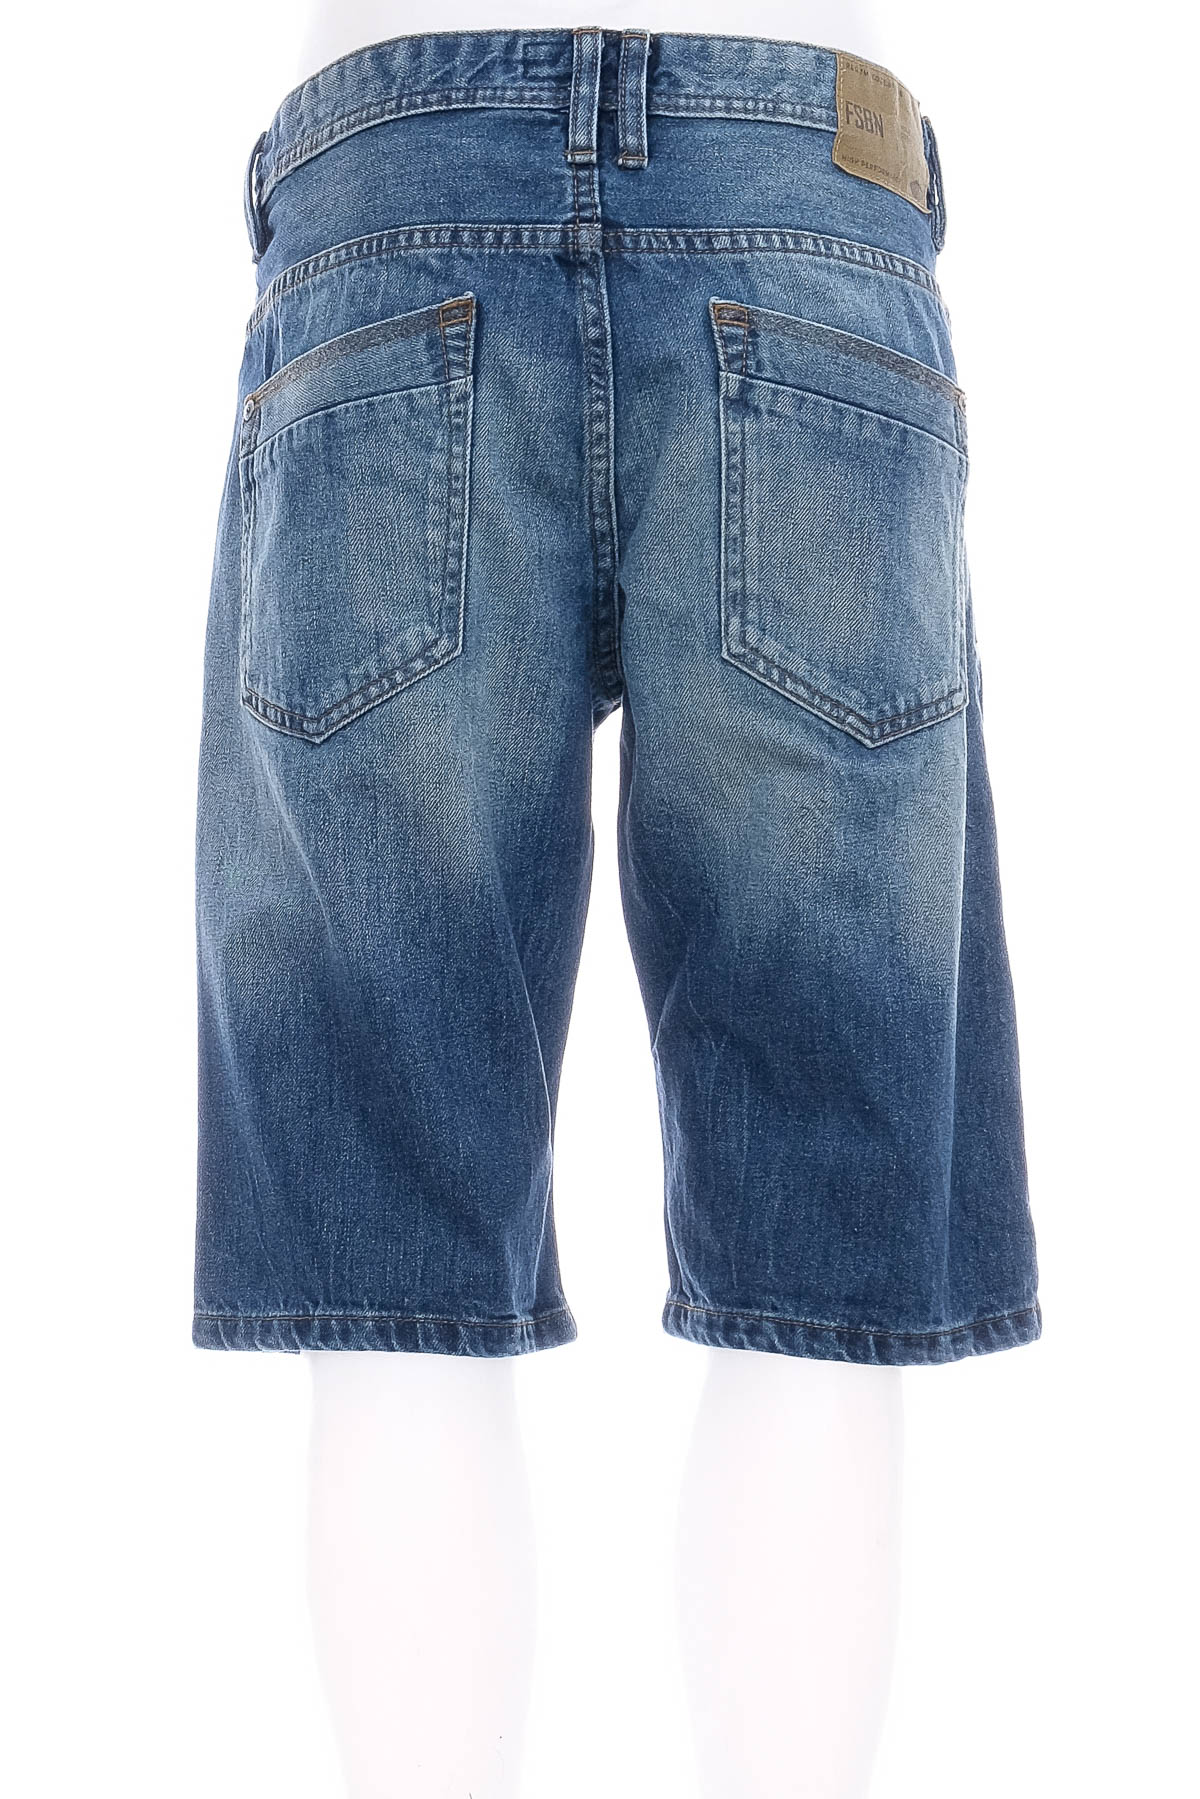 Men's shorts - FSBN - 1